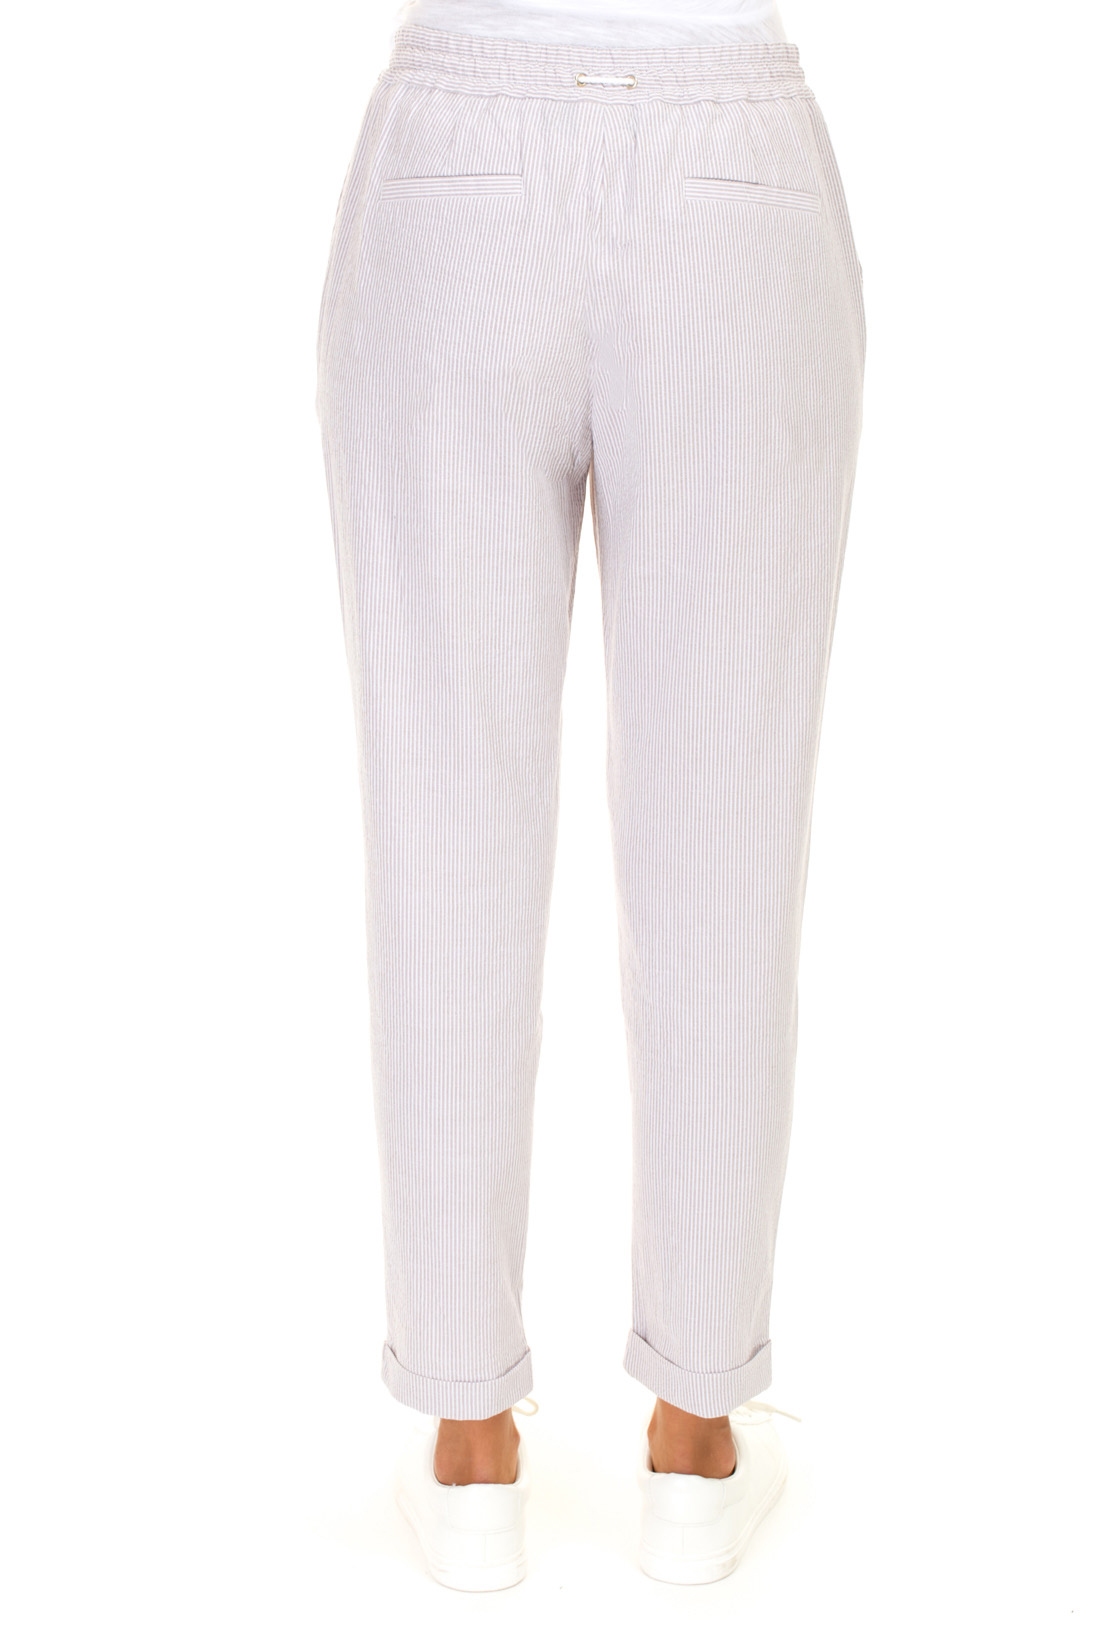 Летние брюки в полоску (арт. baon B297023), размер XS, цвет бежевый Летние брюки в полоску (арт. baon B297023) - фото 2